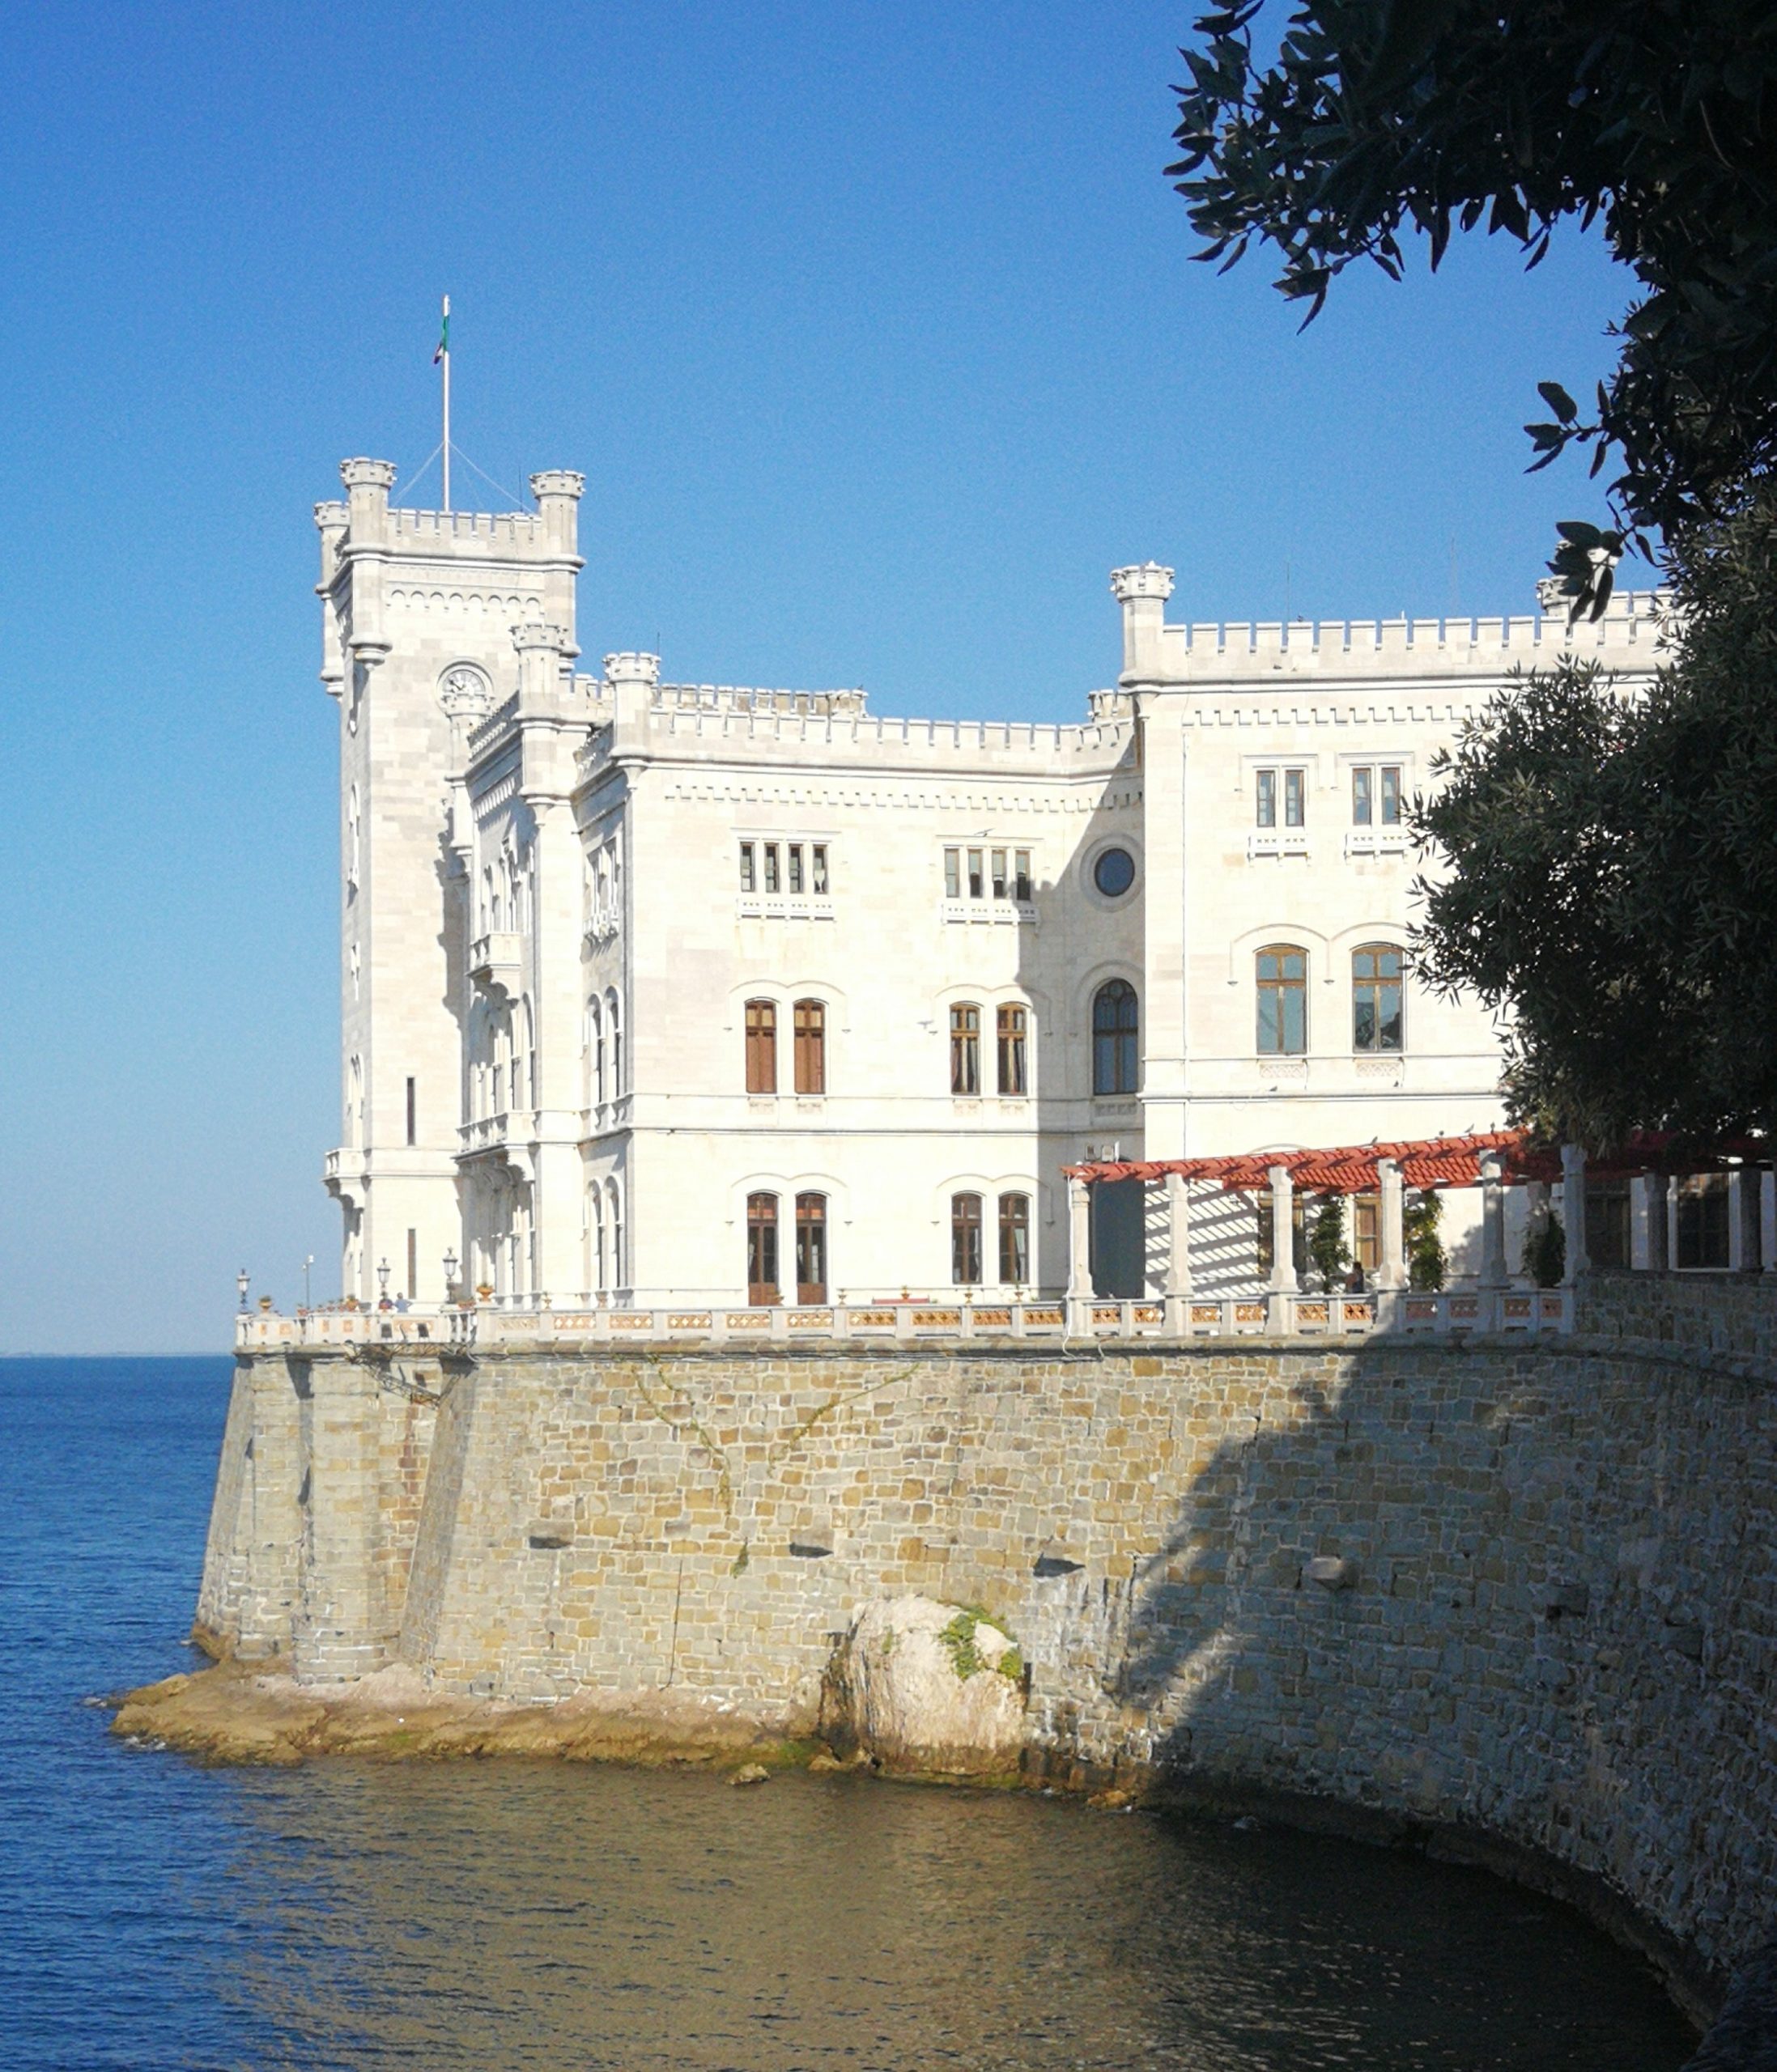 Historic Miramare Castle